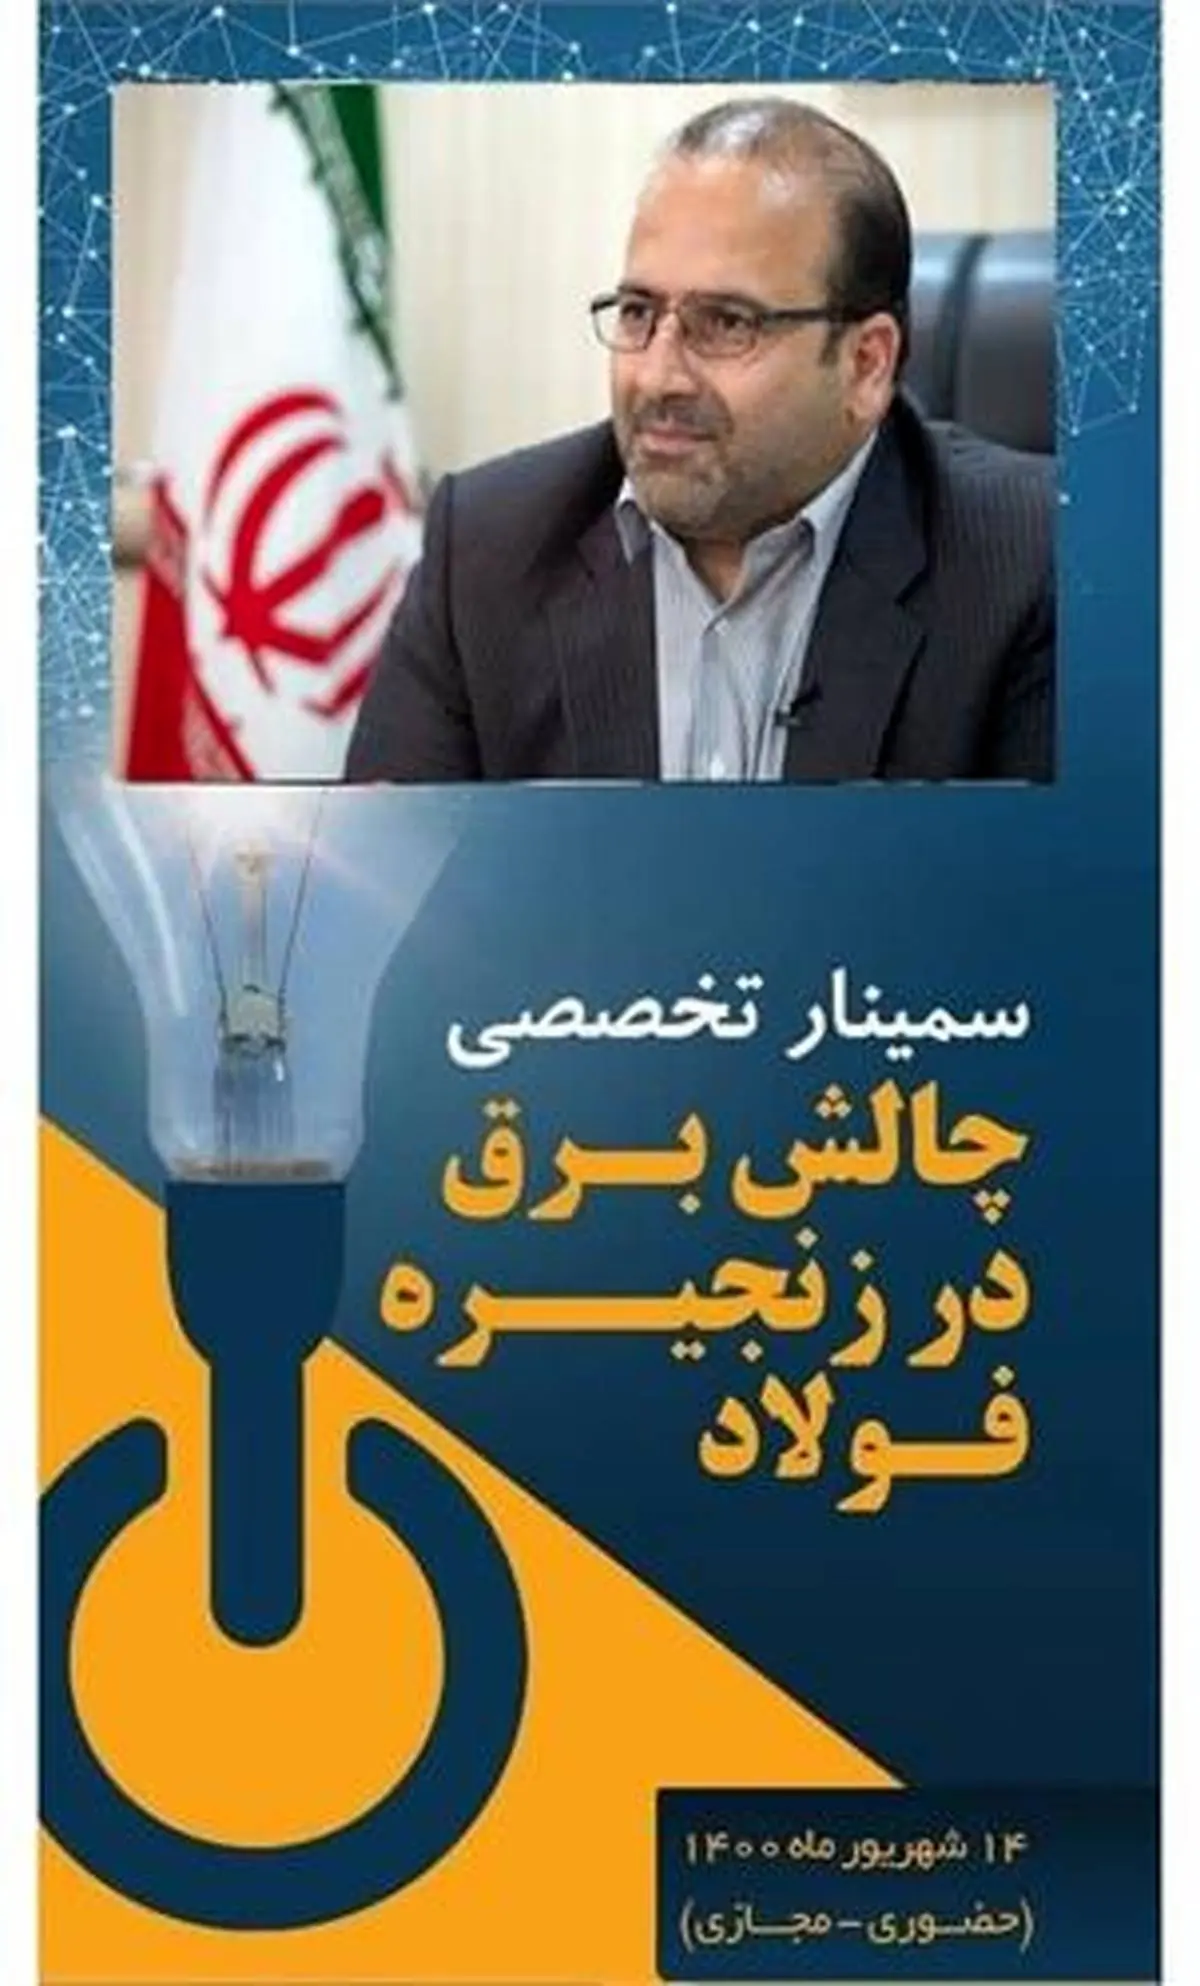 سخنرانی مدیرعامل فولاد خوزستان در سمینار چالش برق در زنجیره فولاد
